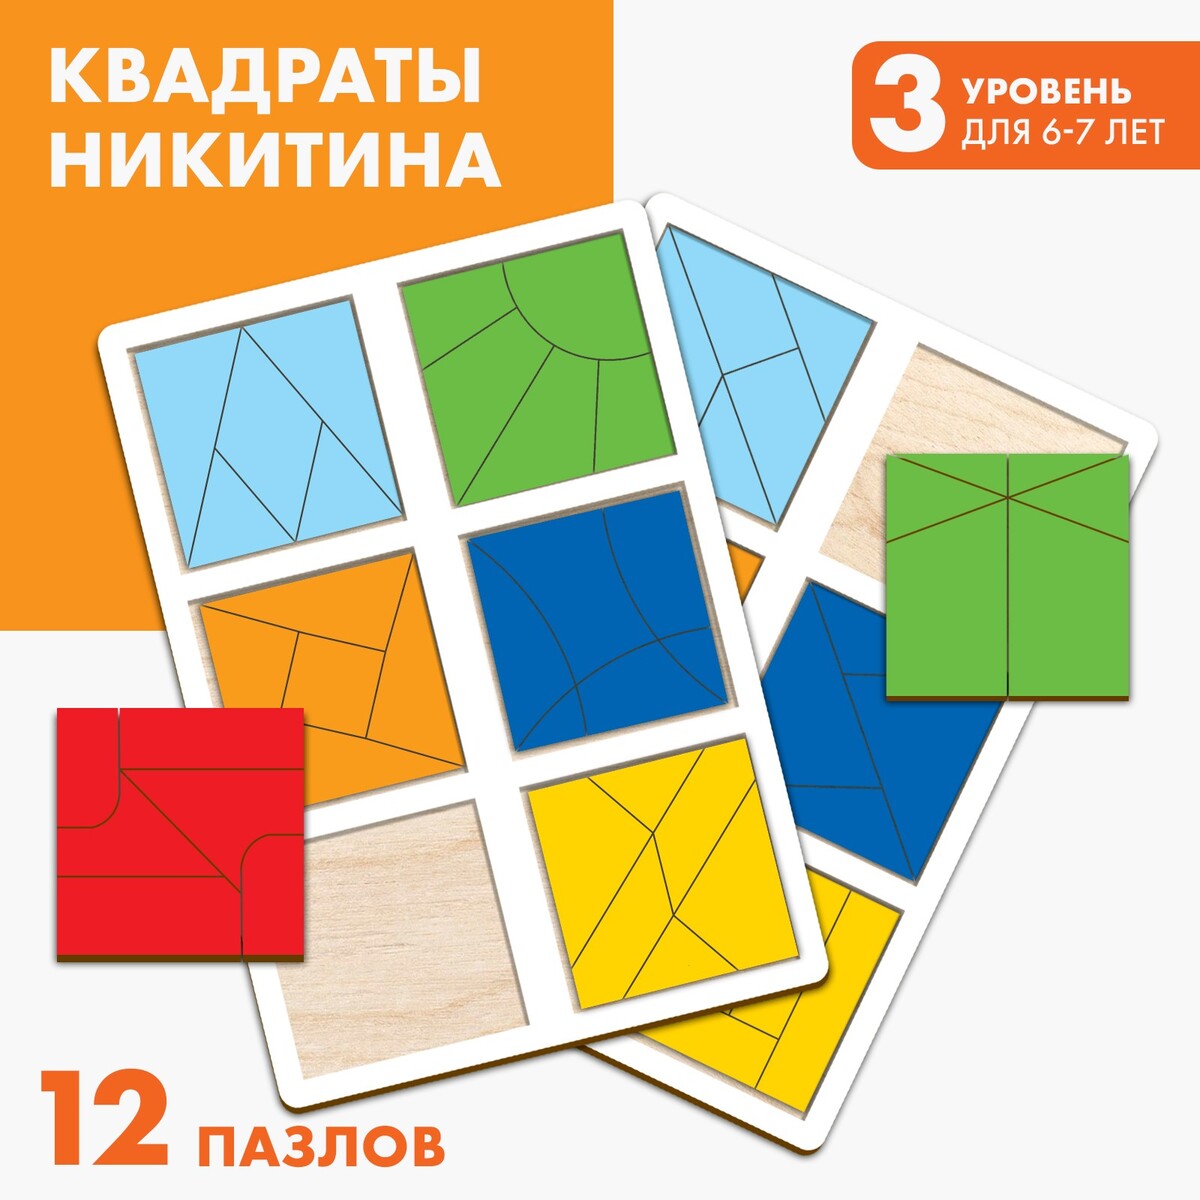 Квадраты 3 уровень (2 шт.), 12 квадратов квадраты никитина 1 уровня 6 квадратов бизиборды